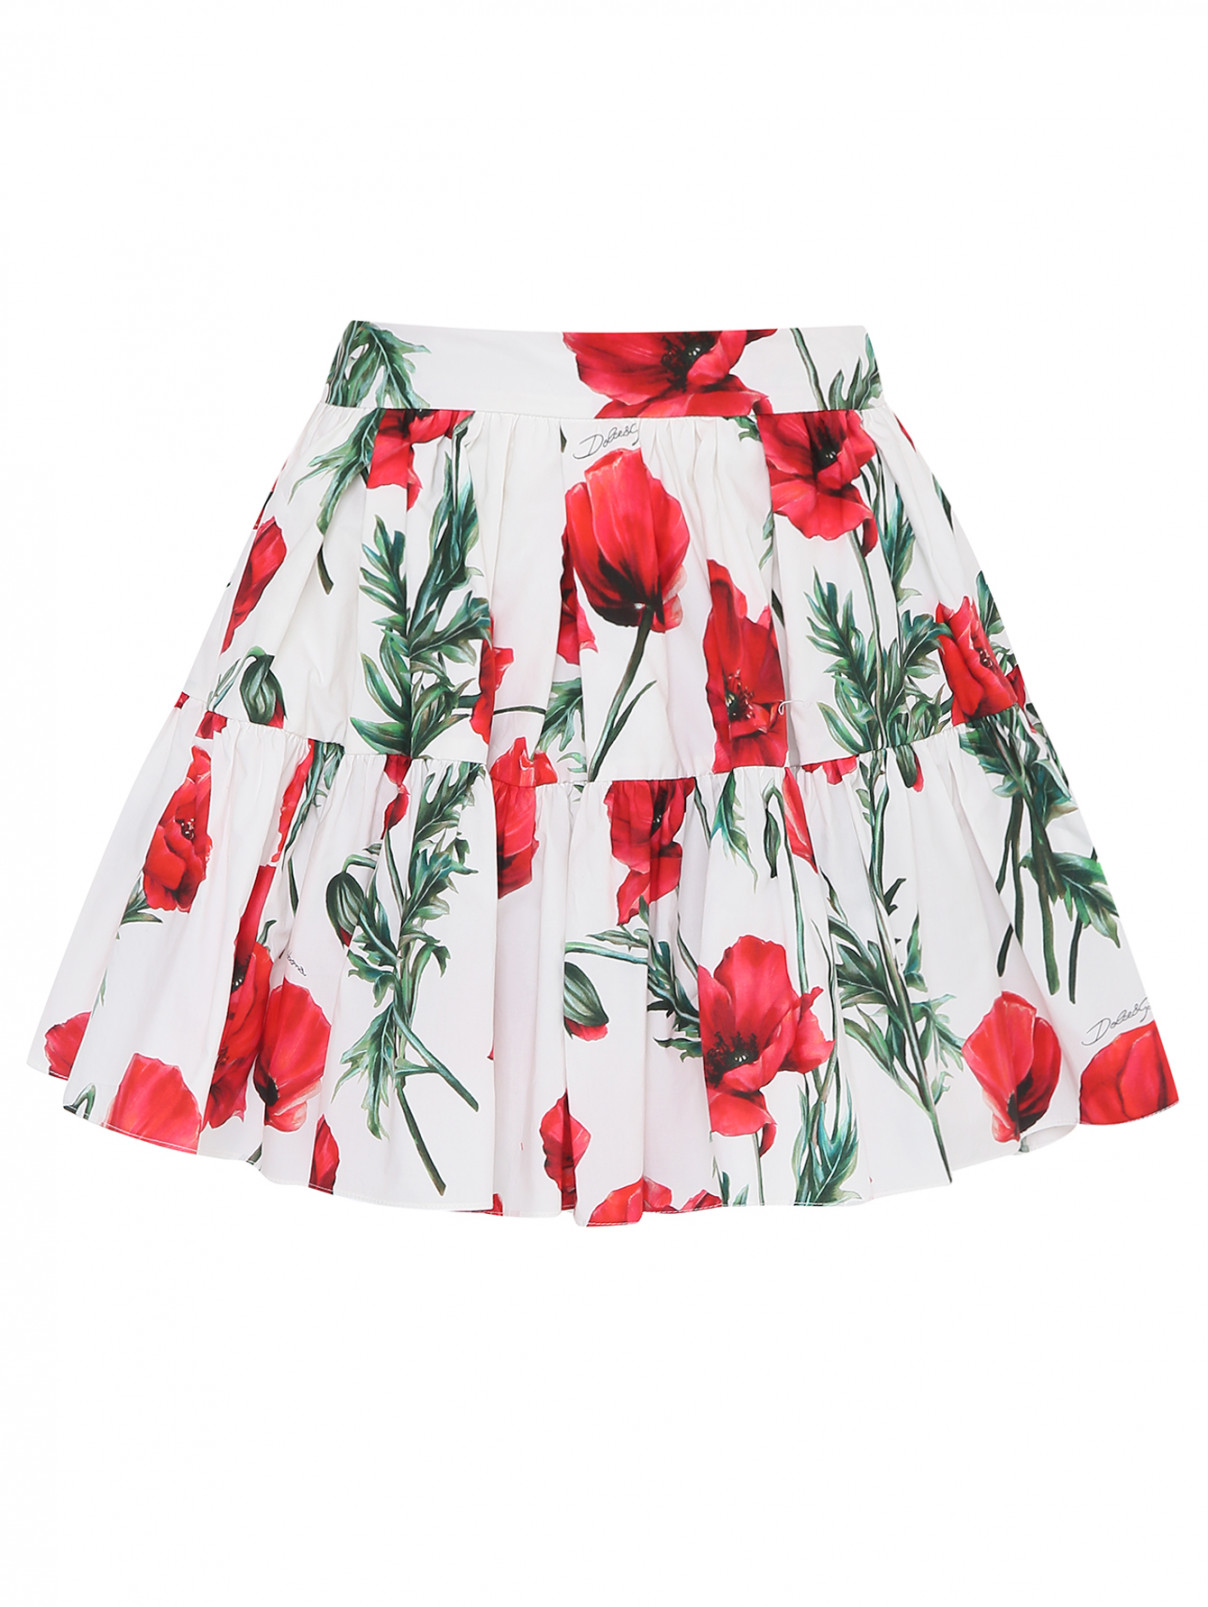 Юбка из хлопка с цветочным узором Dolce & Gabbana  –  Общий вид  – Цвет:  Узор